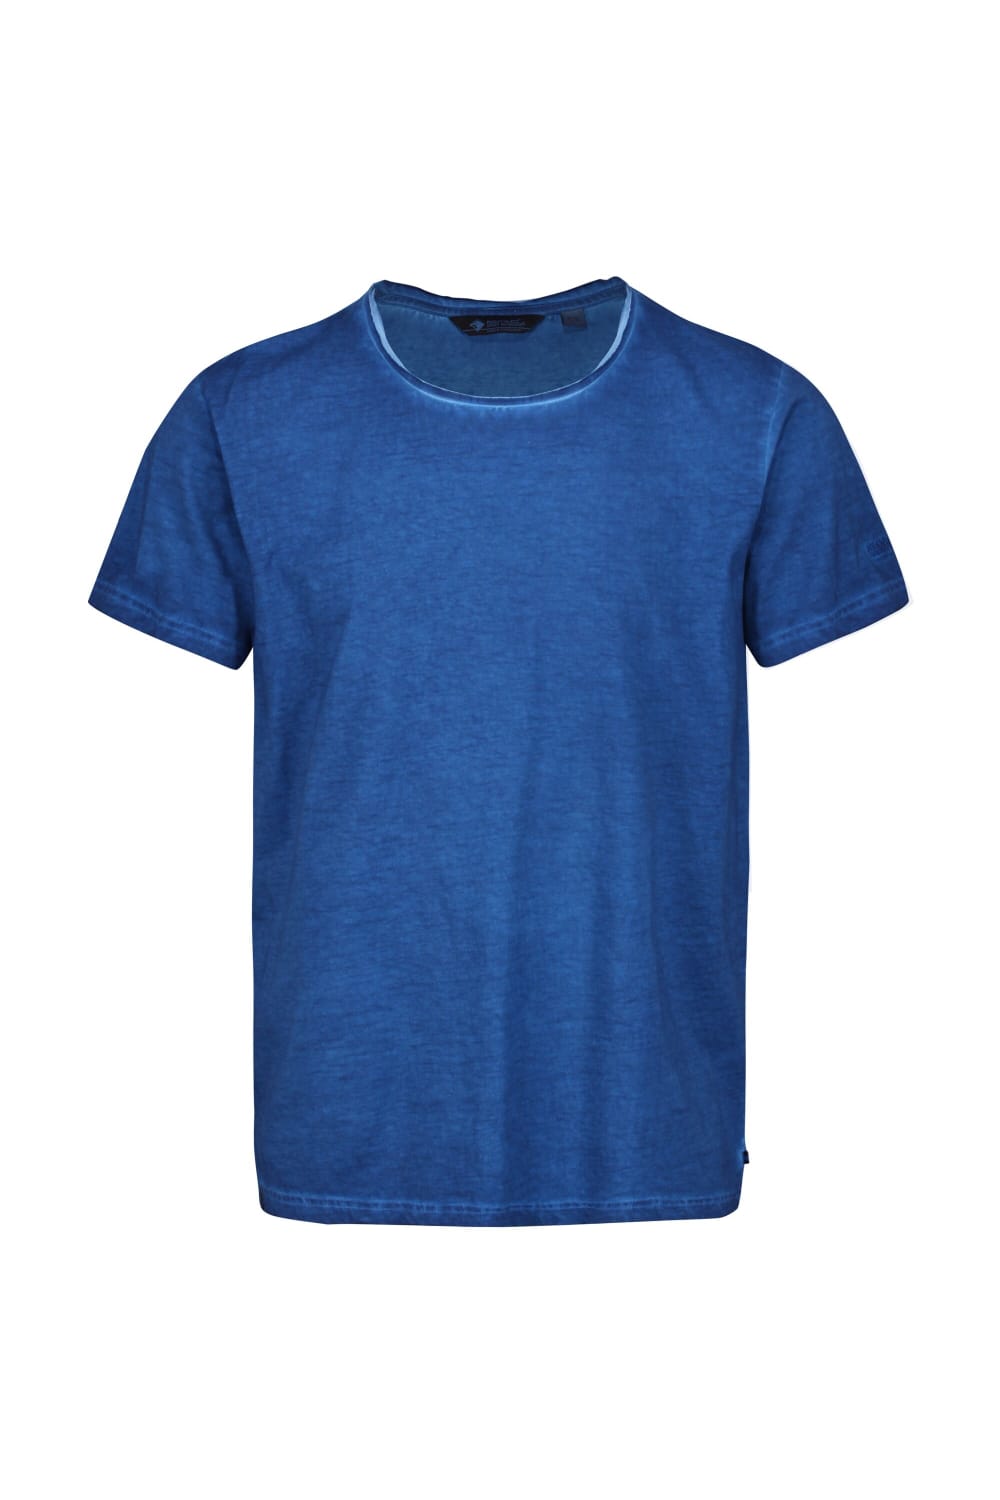 Regatta Mens Calmon T-Shirt (Nautical Blue)